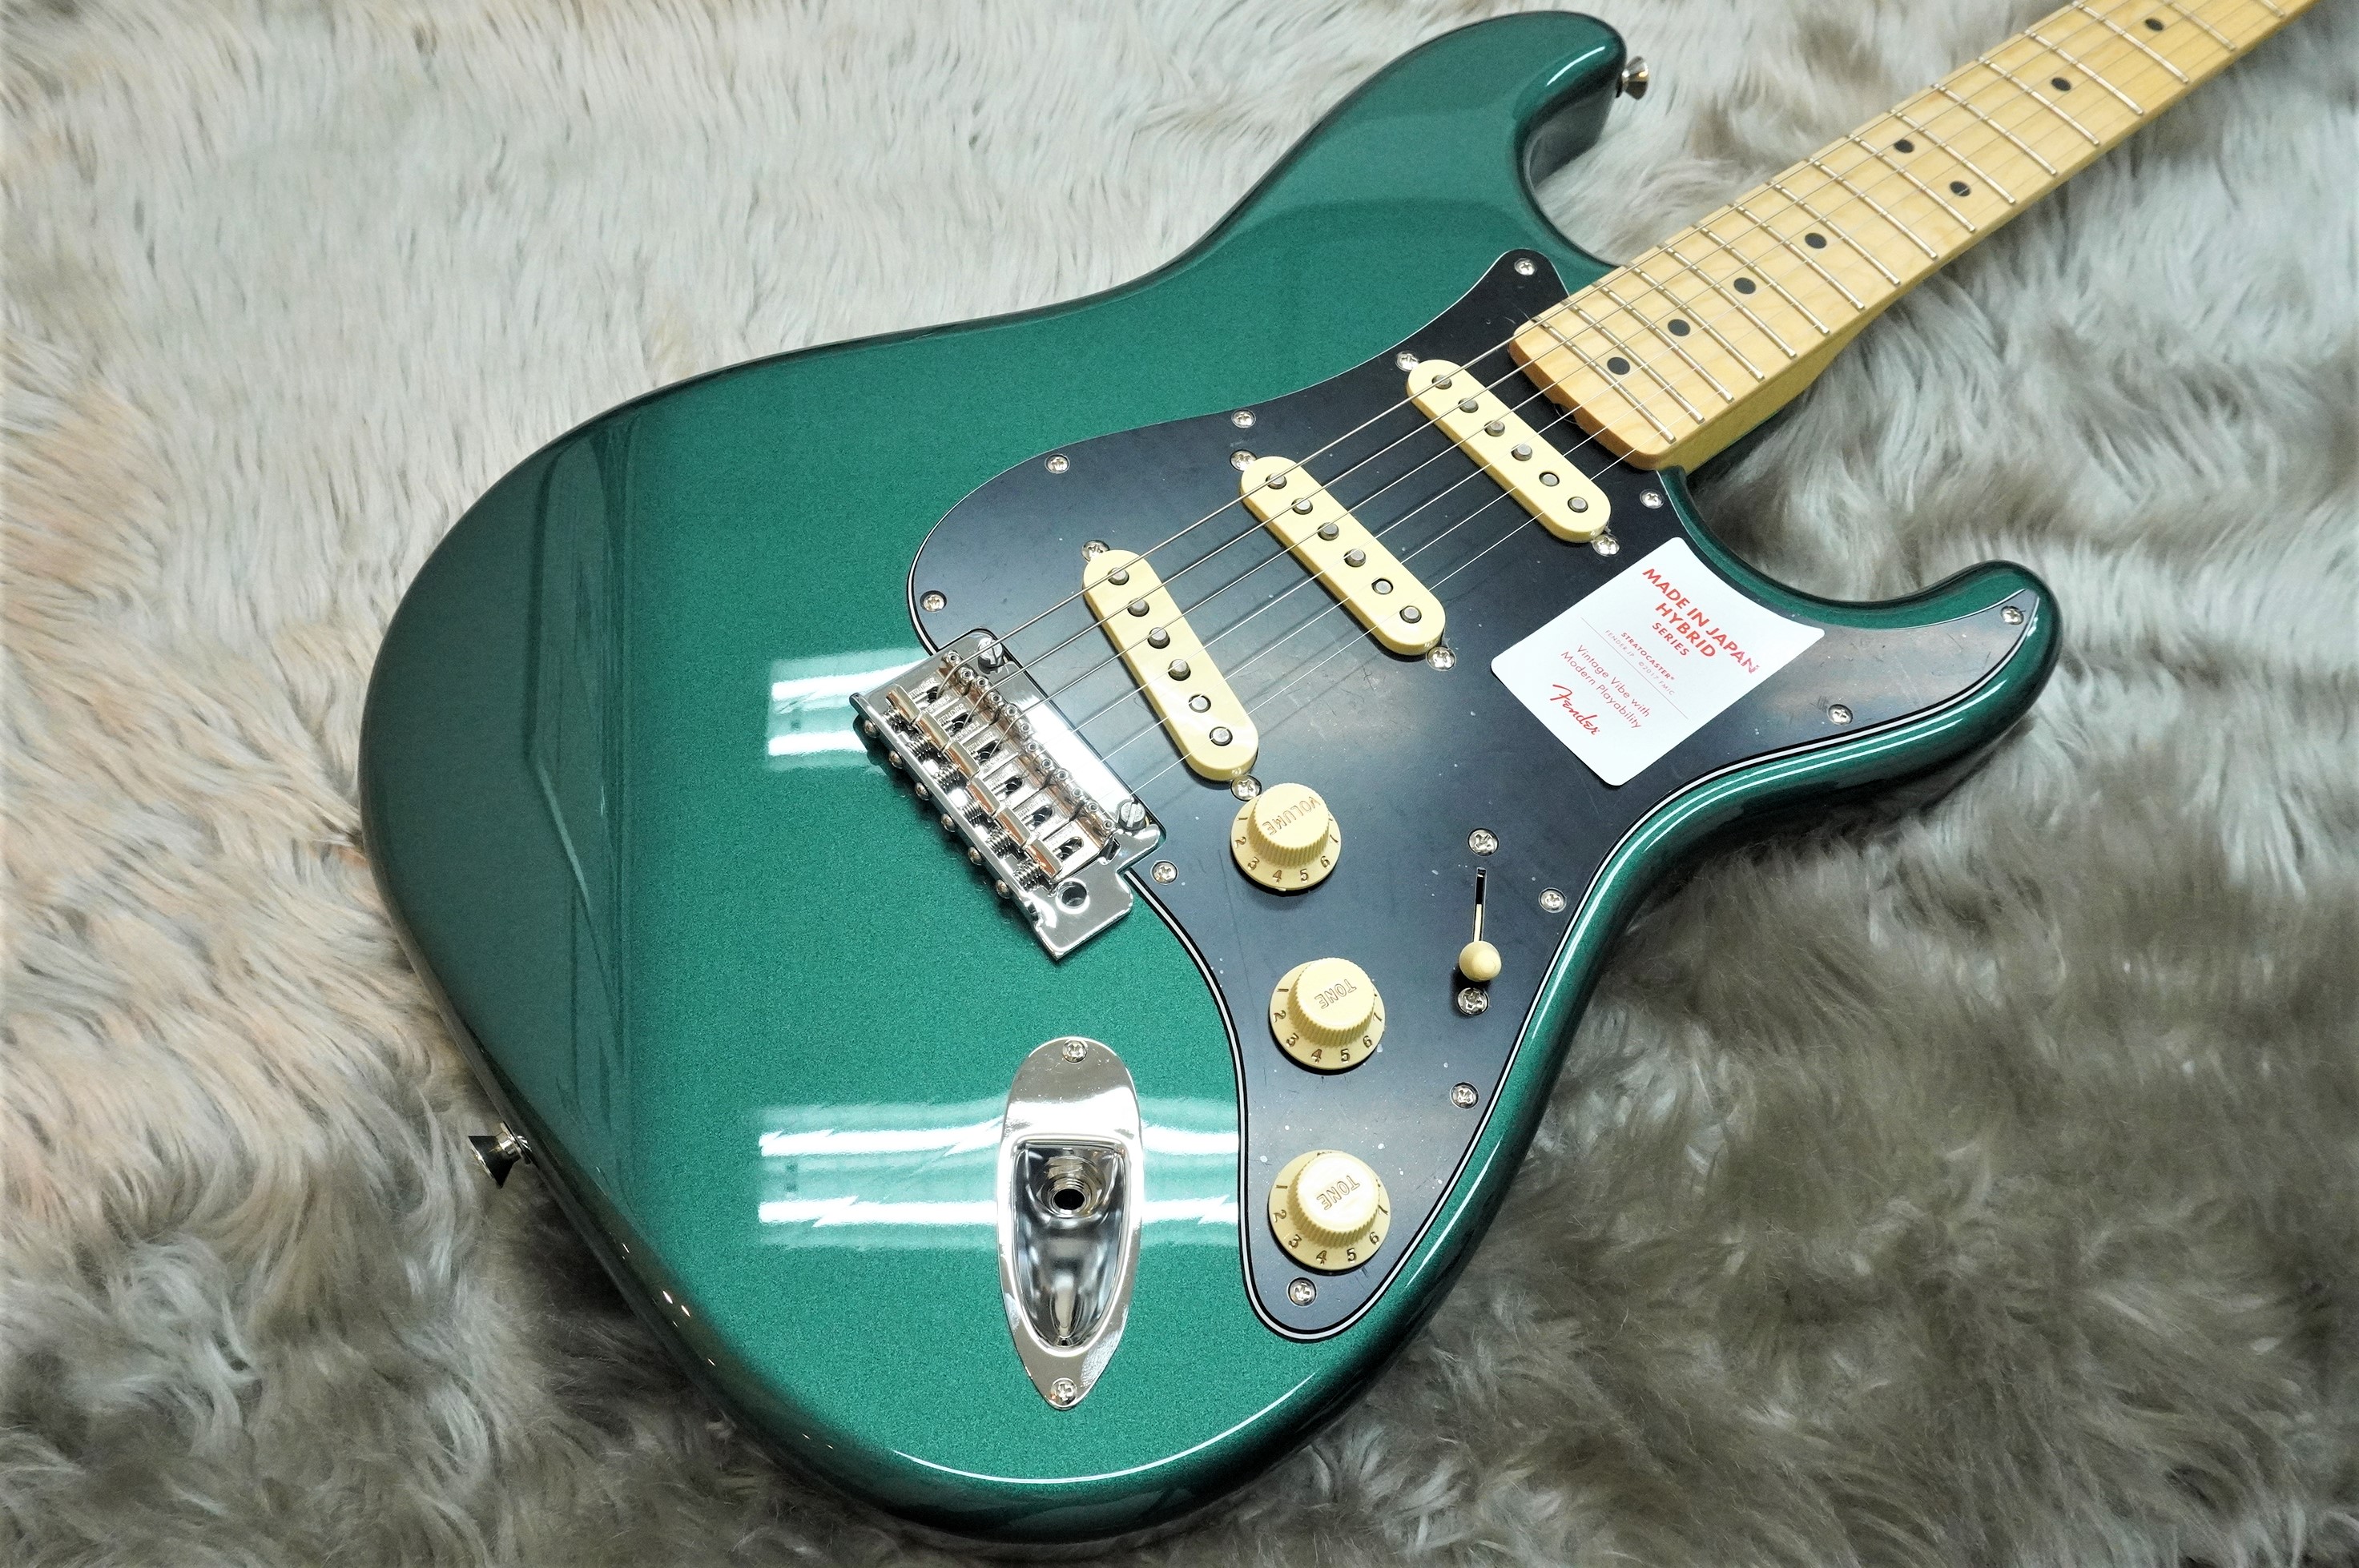 エレキギター】Fender MADE IN JAPAN HYBRID 68 STRATOCASTER入荷のご